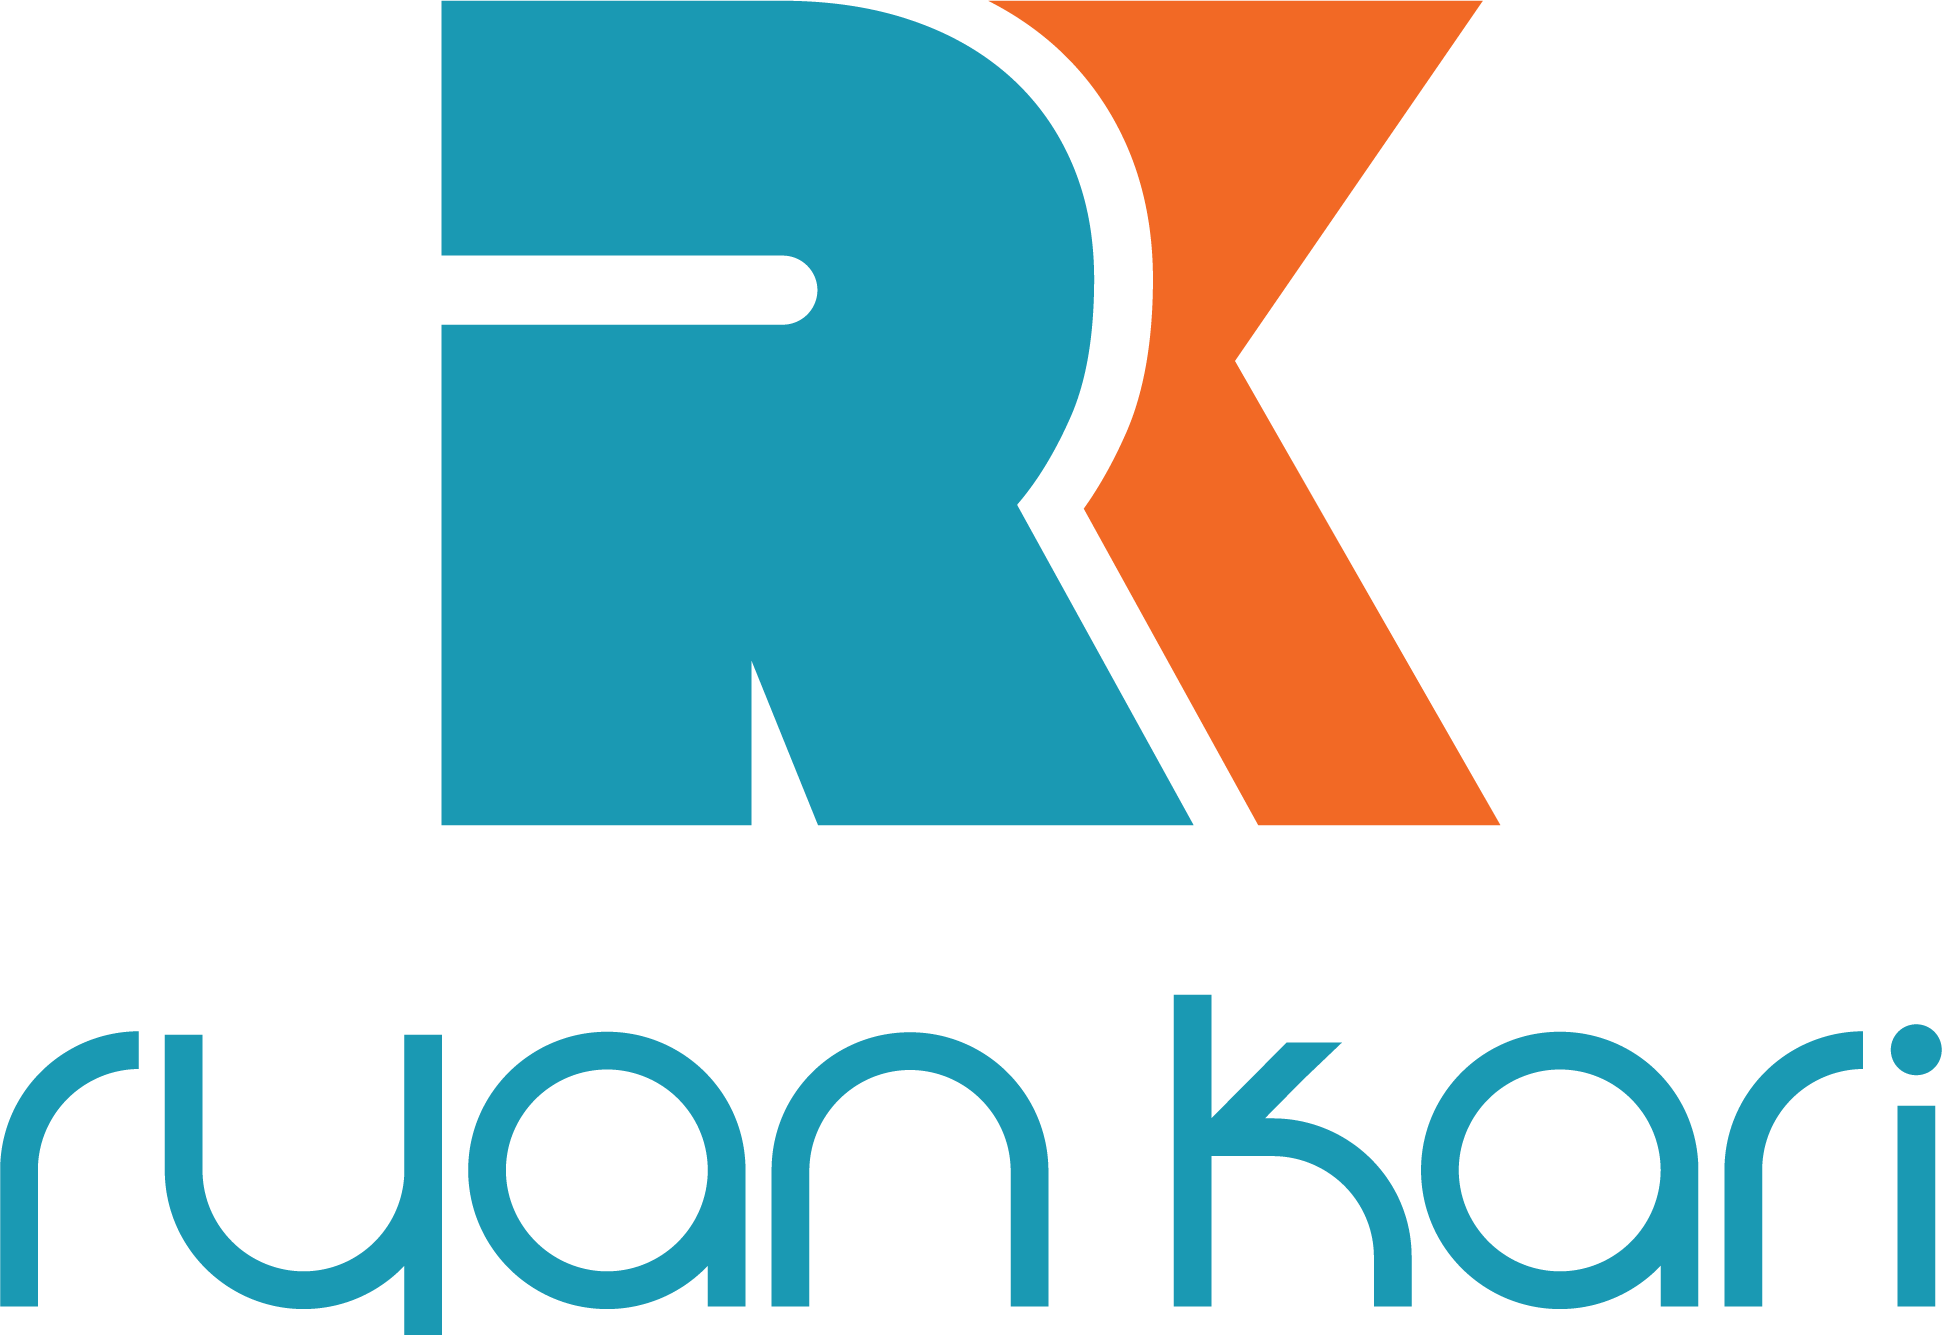 Ryan Kari